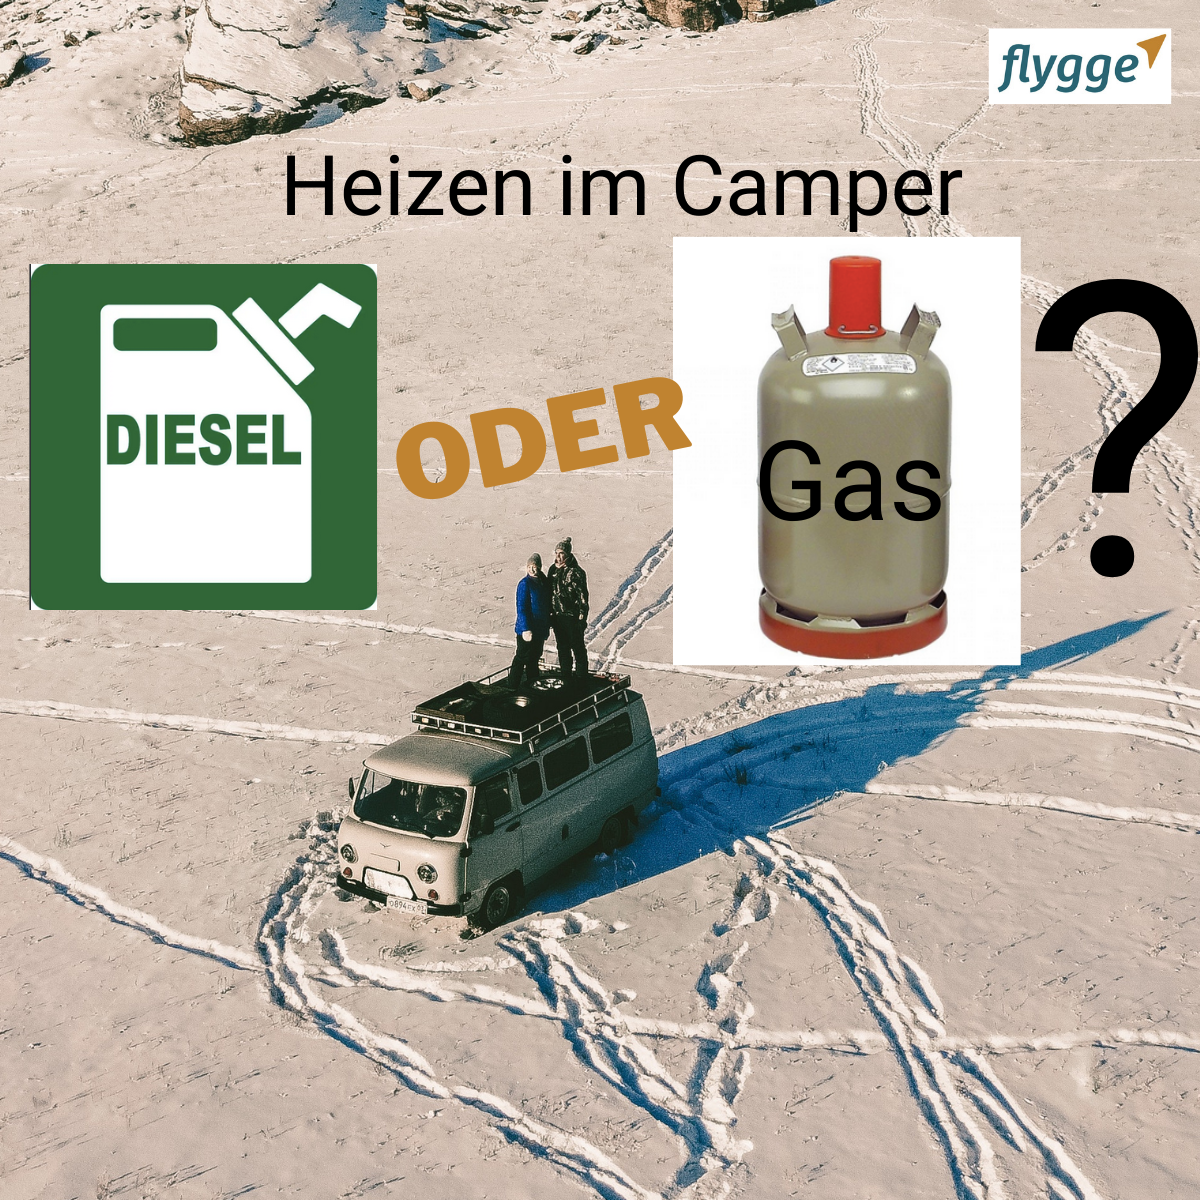 Heating with diesel or gas in the camper? - Navigation für Wohnmobil und  Caravan